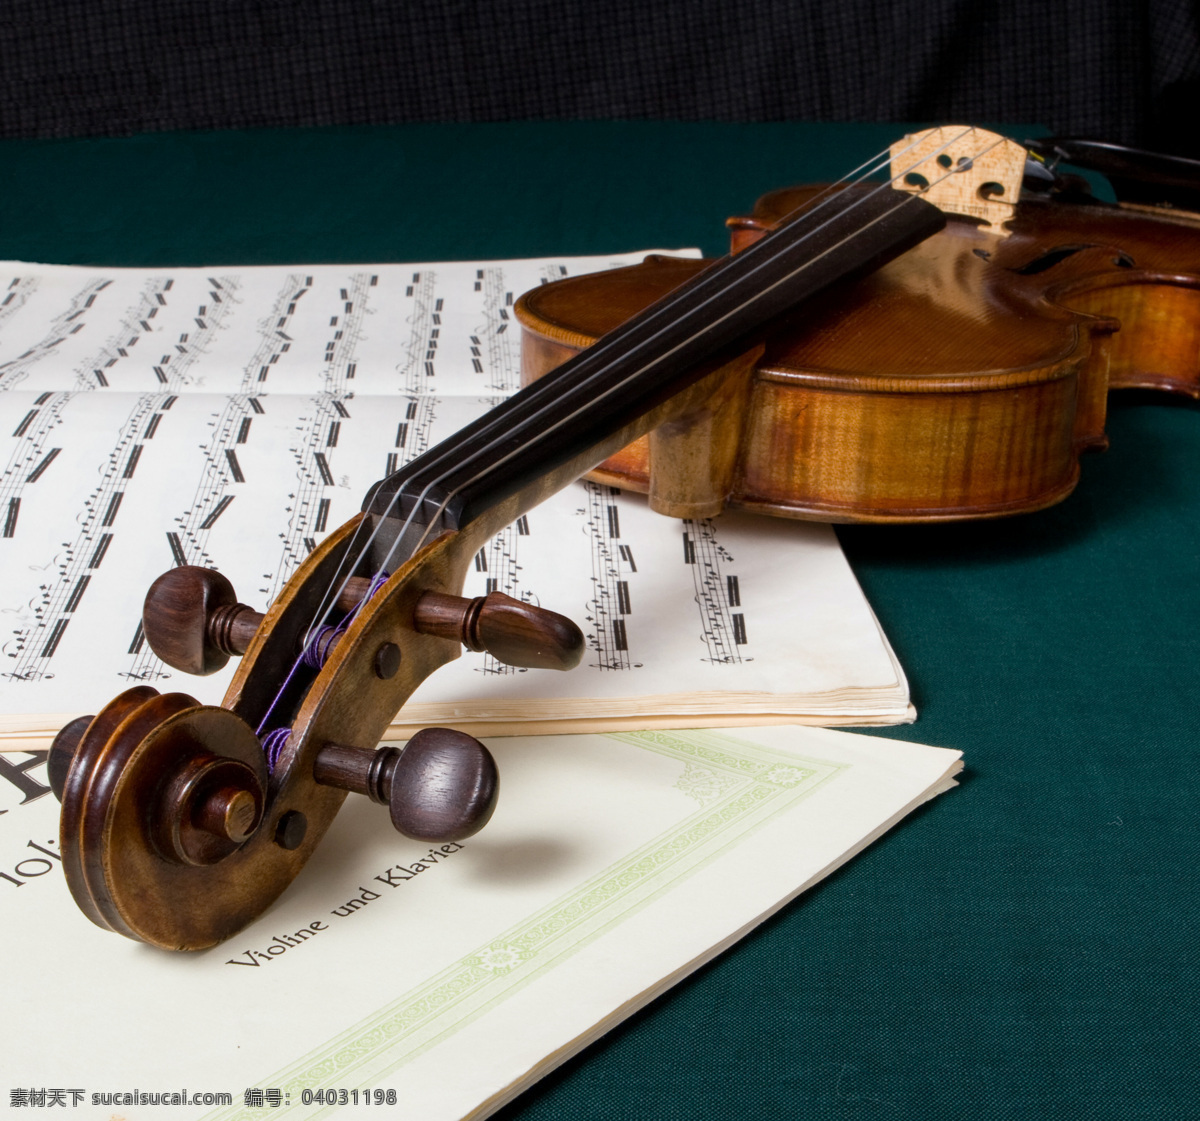 小提琴 乐谱 乐器 文化艺术 舞蹈音乐 木质小提琴 红木小提琴 psd源文件